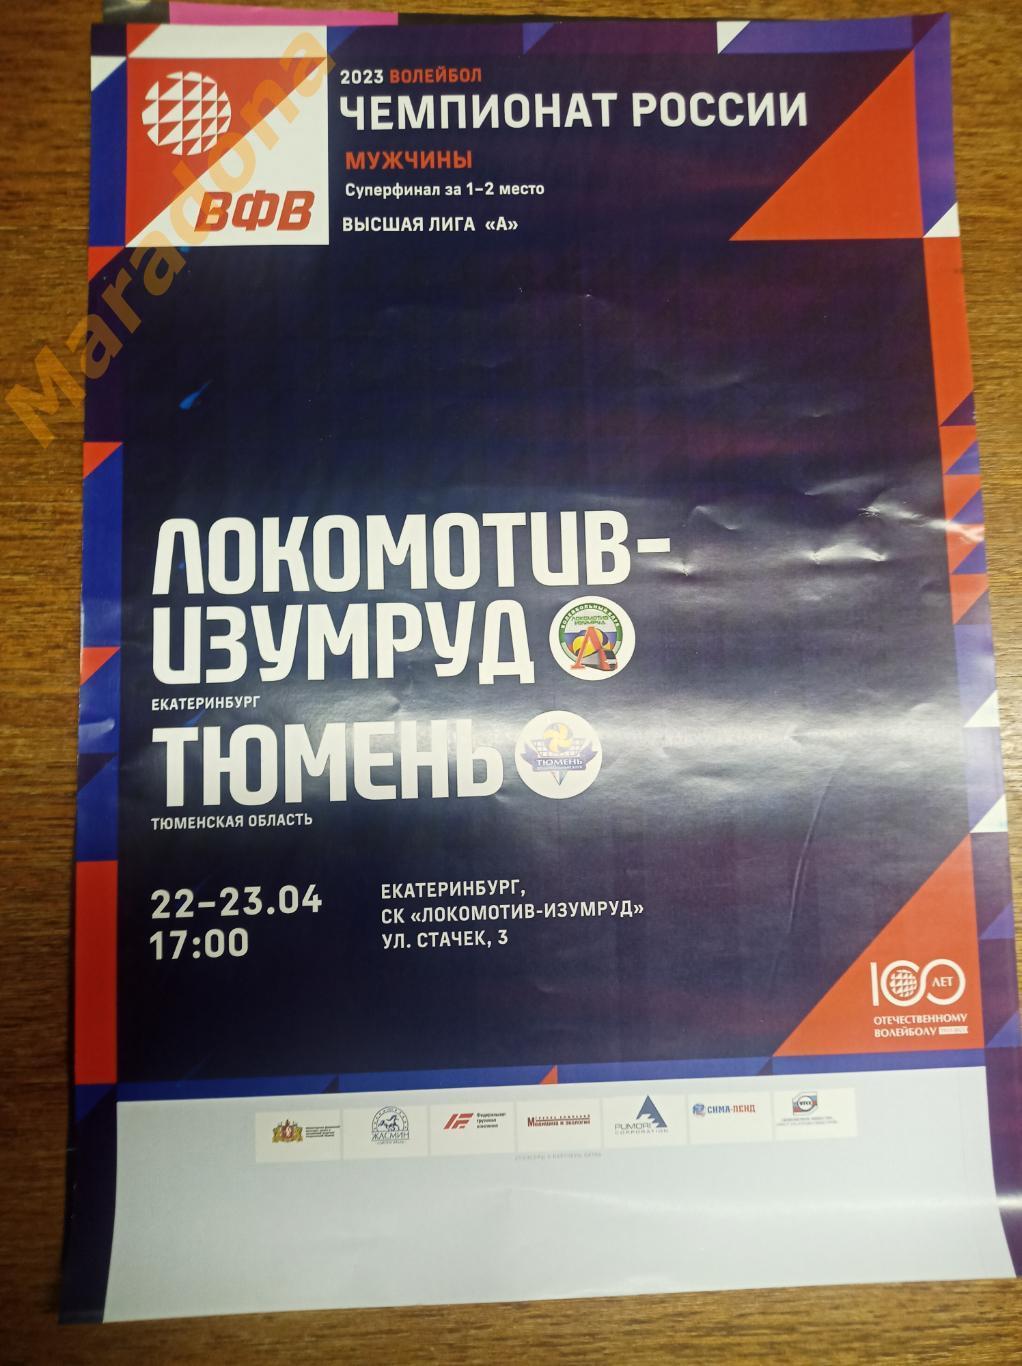 Локомотив-Изумруд Екатеринбург - Тюмень 2022/2023 Суперфинал